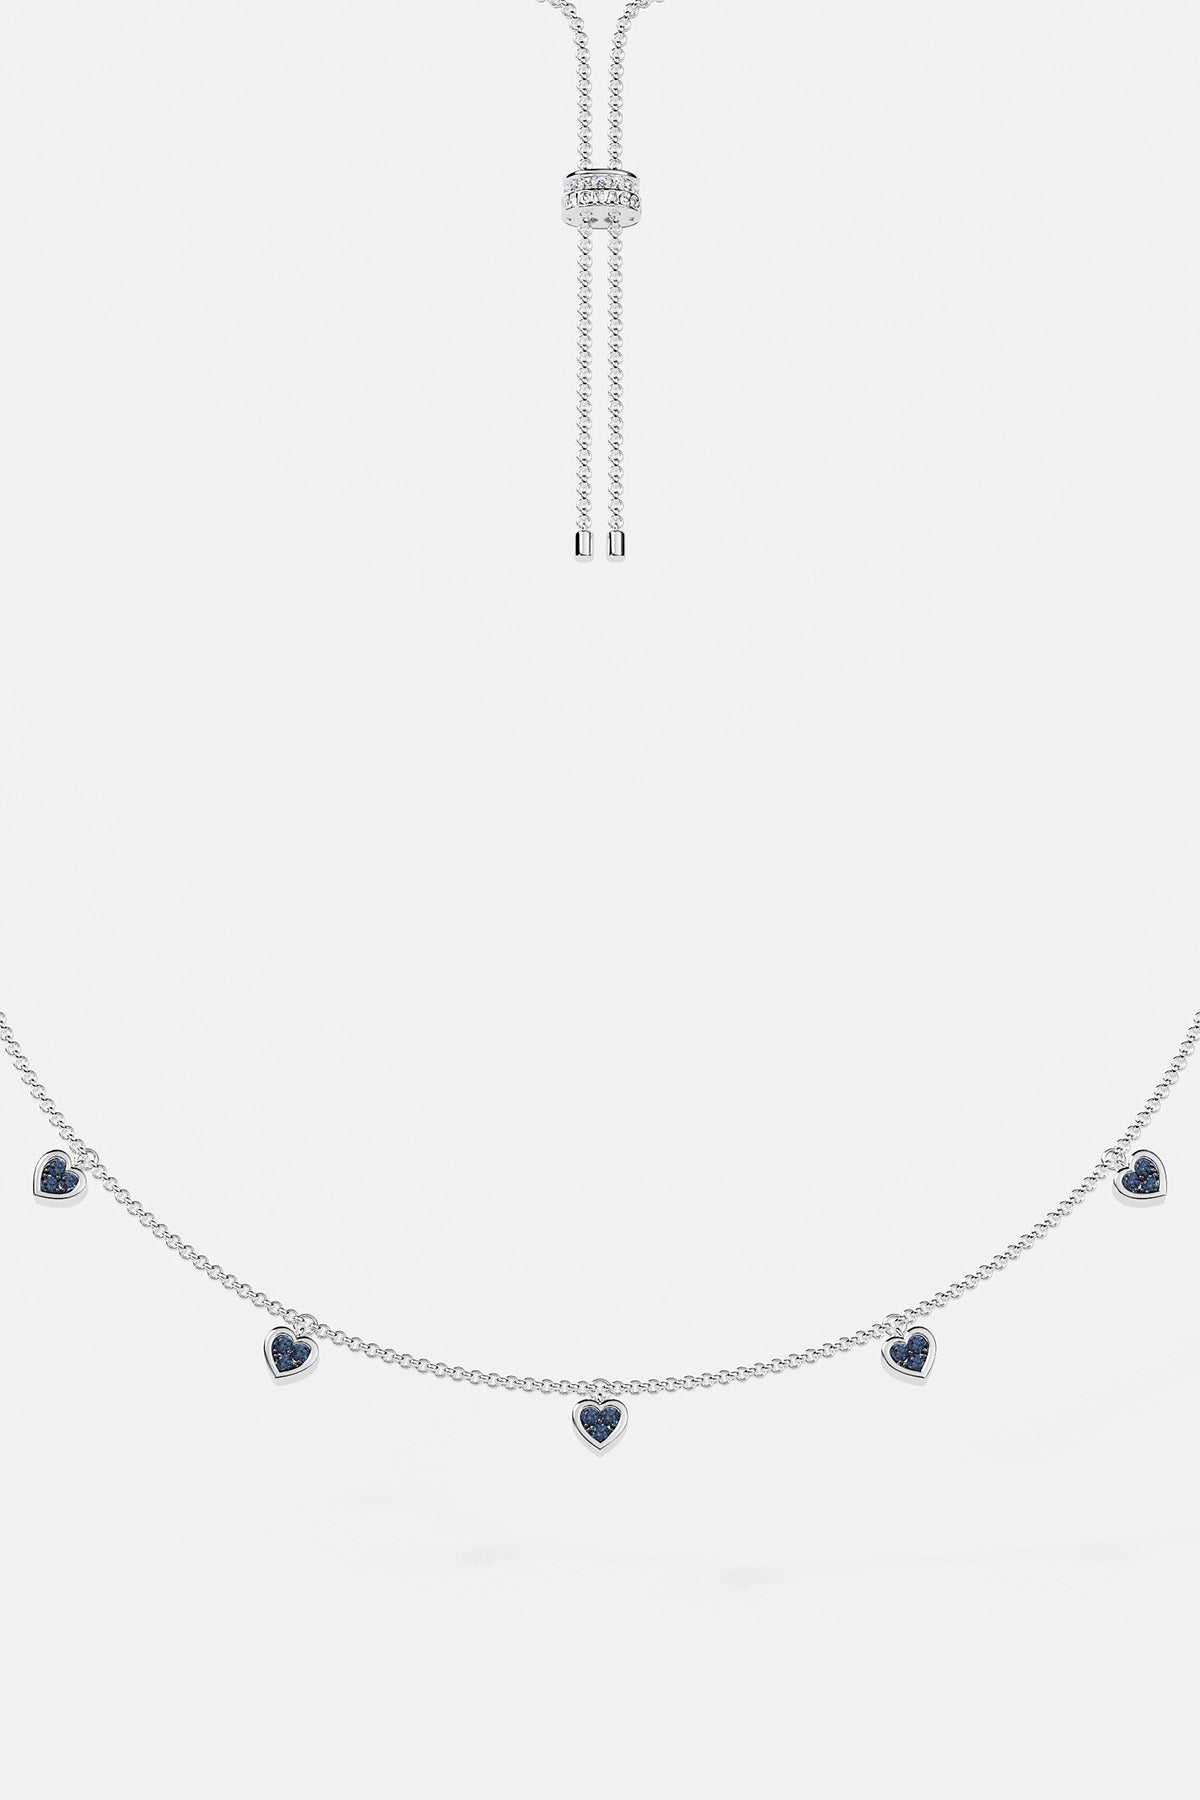 Blue & White Heart Adjustable Necklace - APM Monaco